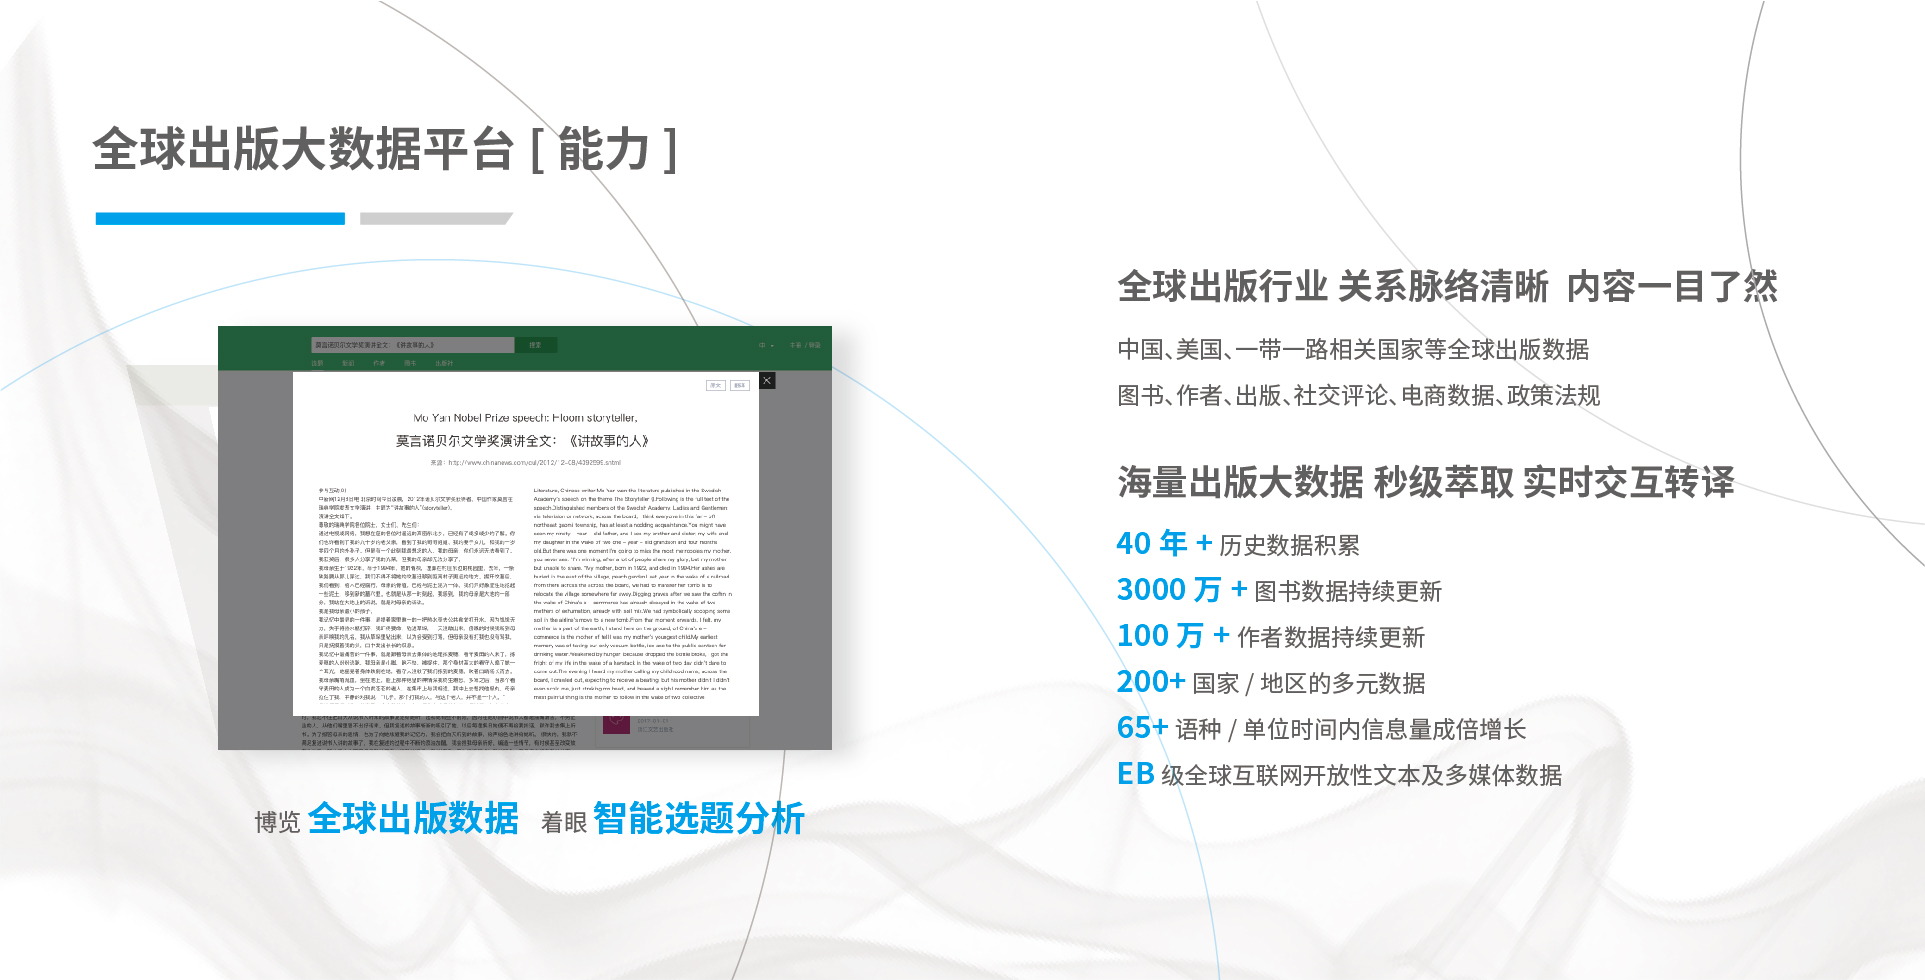 全球出版大数据 2017.V1.0 中文(1)_画板 4.jpg